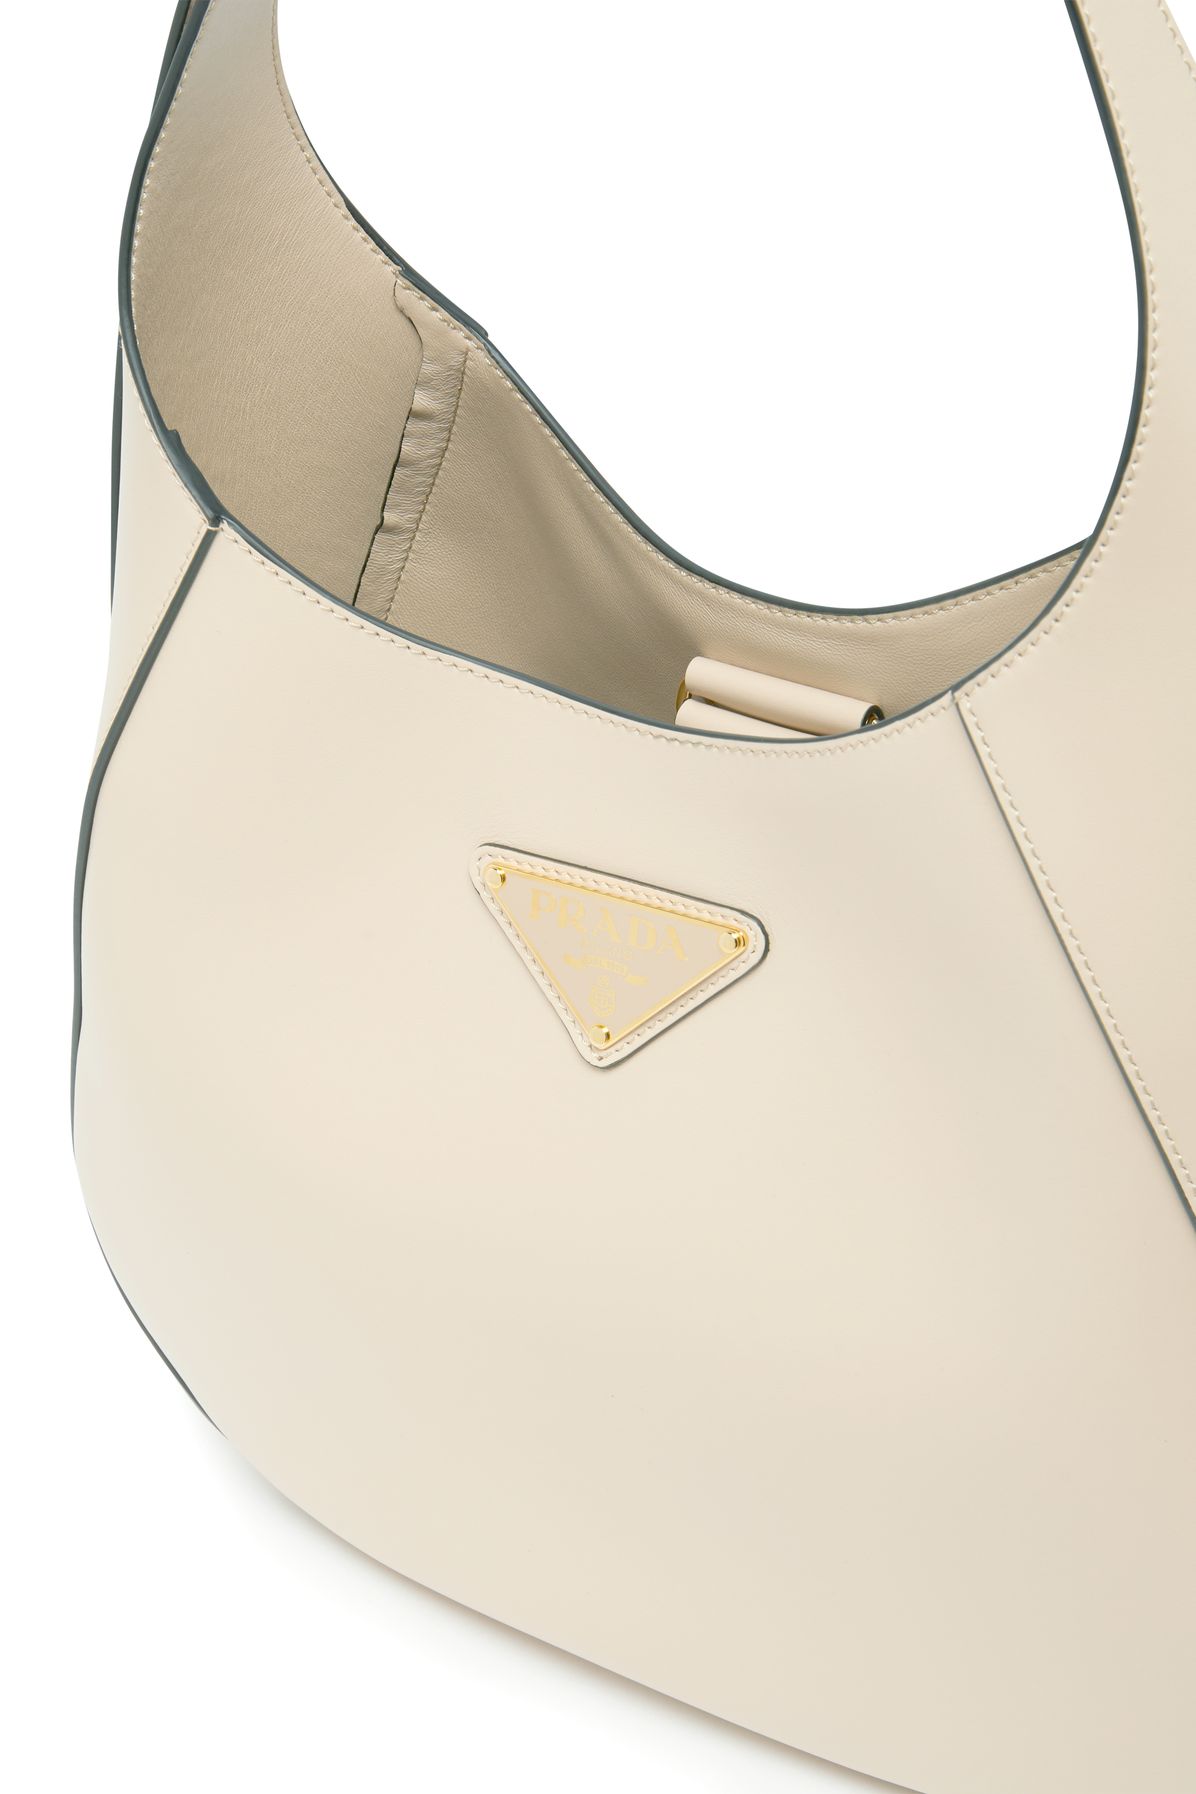 Prada Prada Symbol Handbag